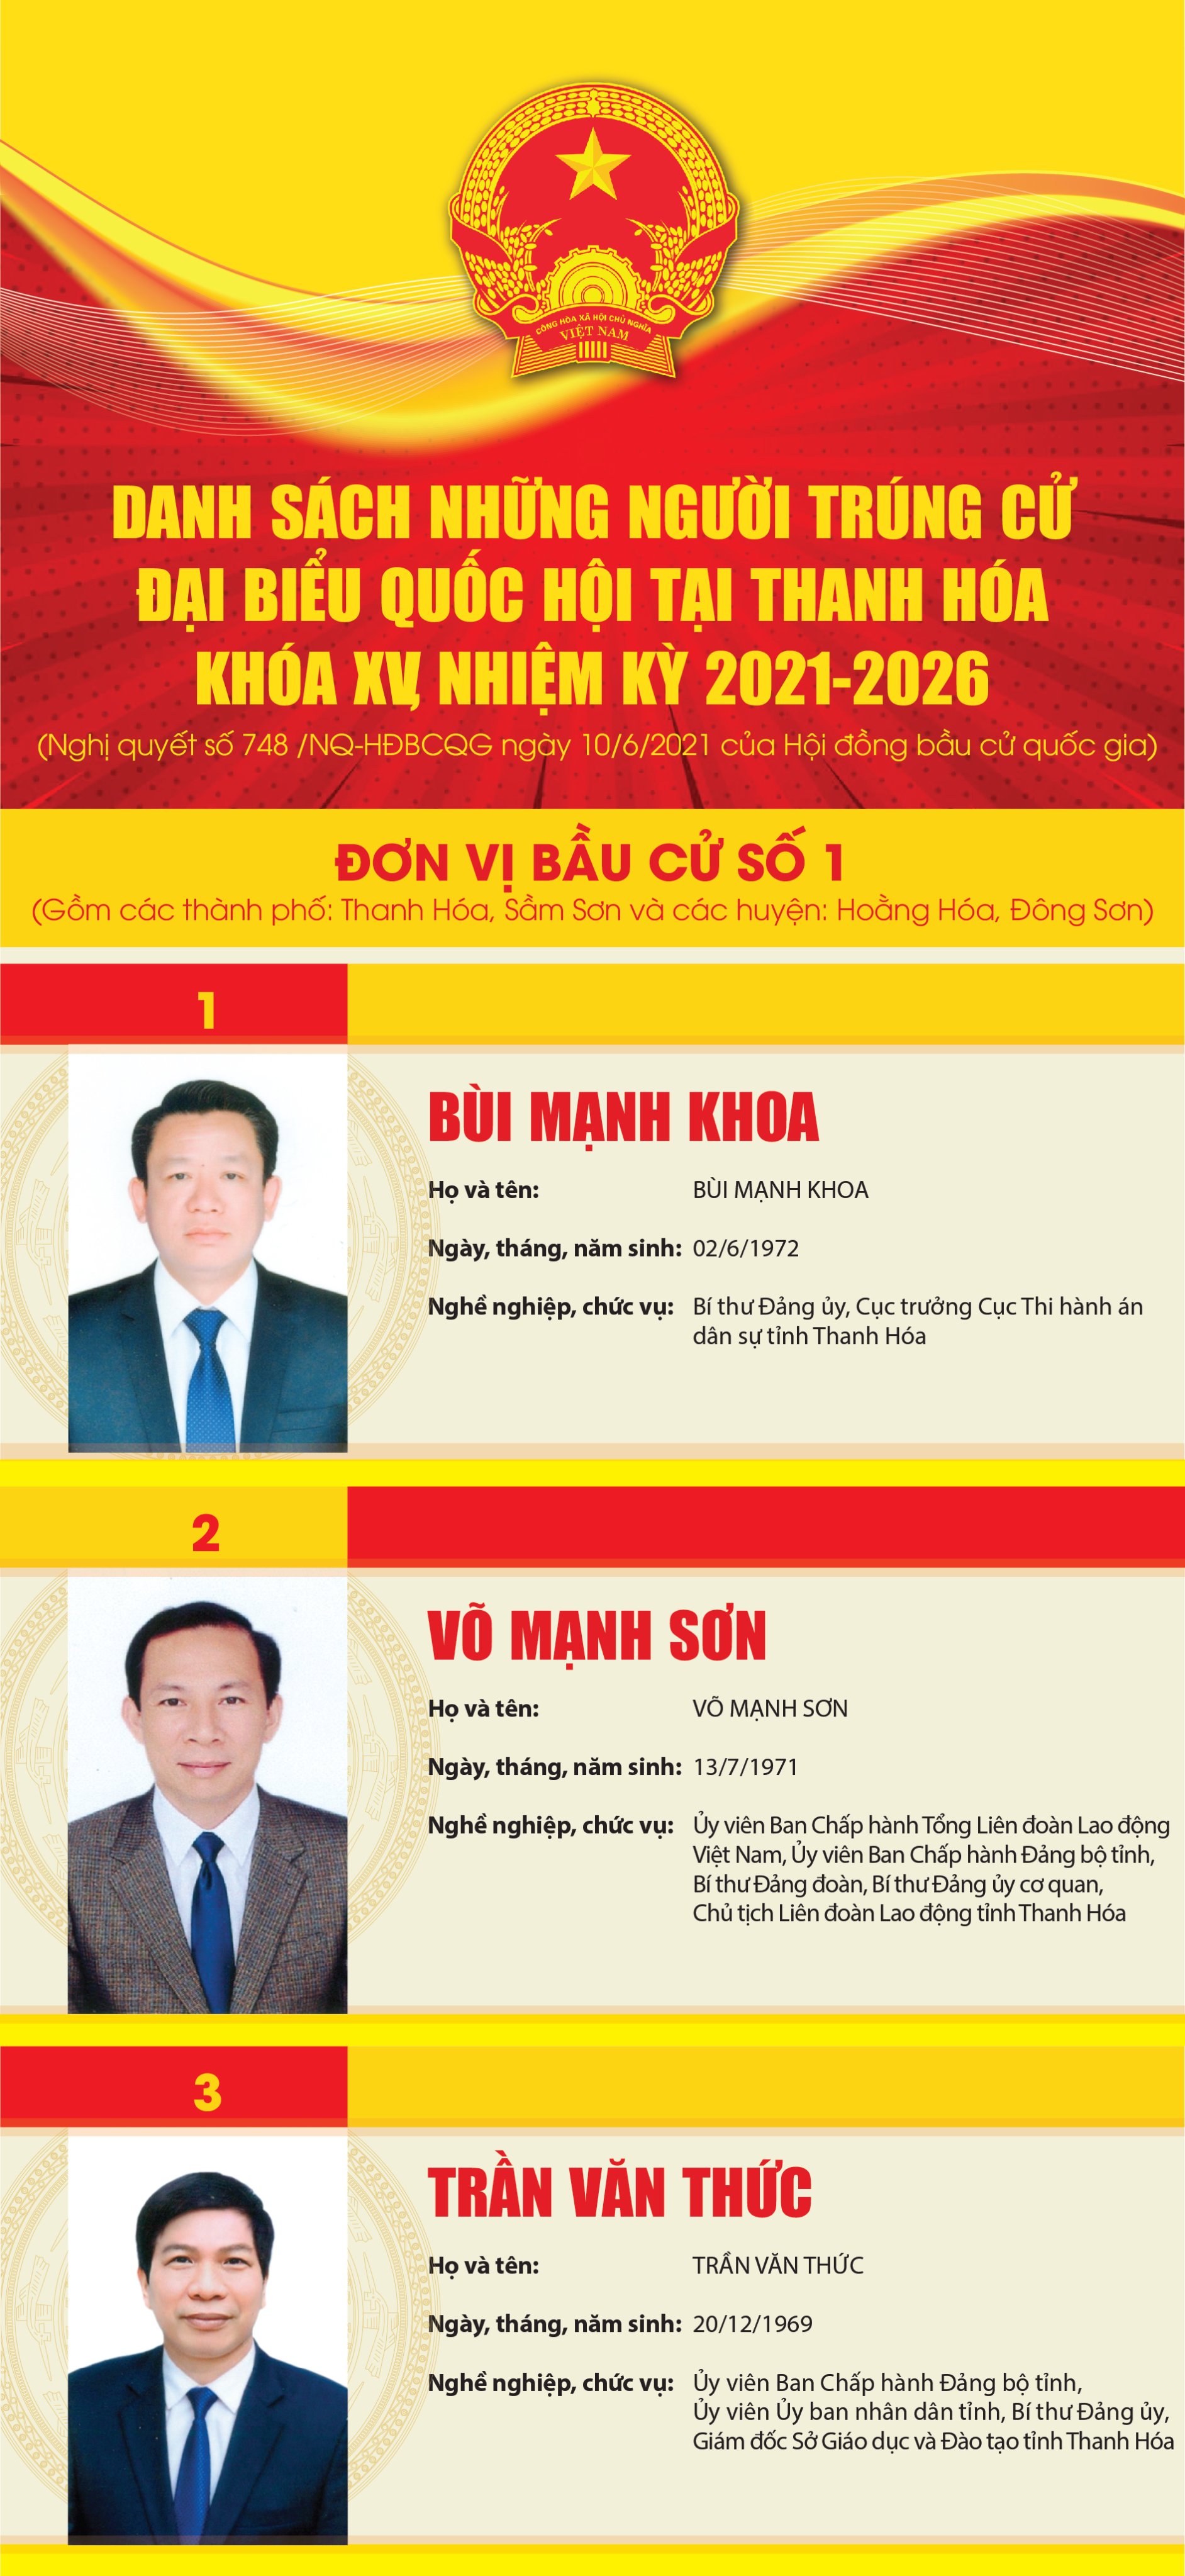 [Infographic] - Danh sách những người trúng cử đại biểu quốc hội tại Thanh Hóa khóa XV, nhiệm kỳ 2021-2026